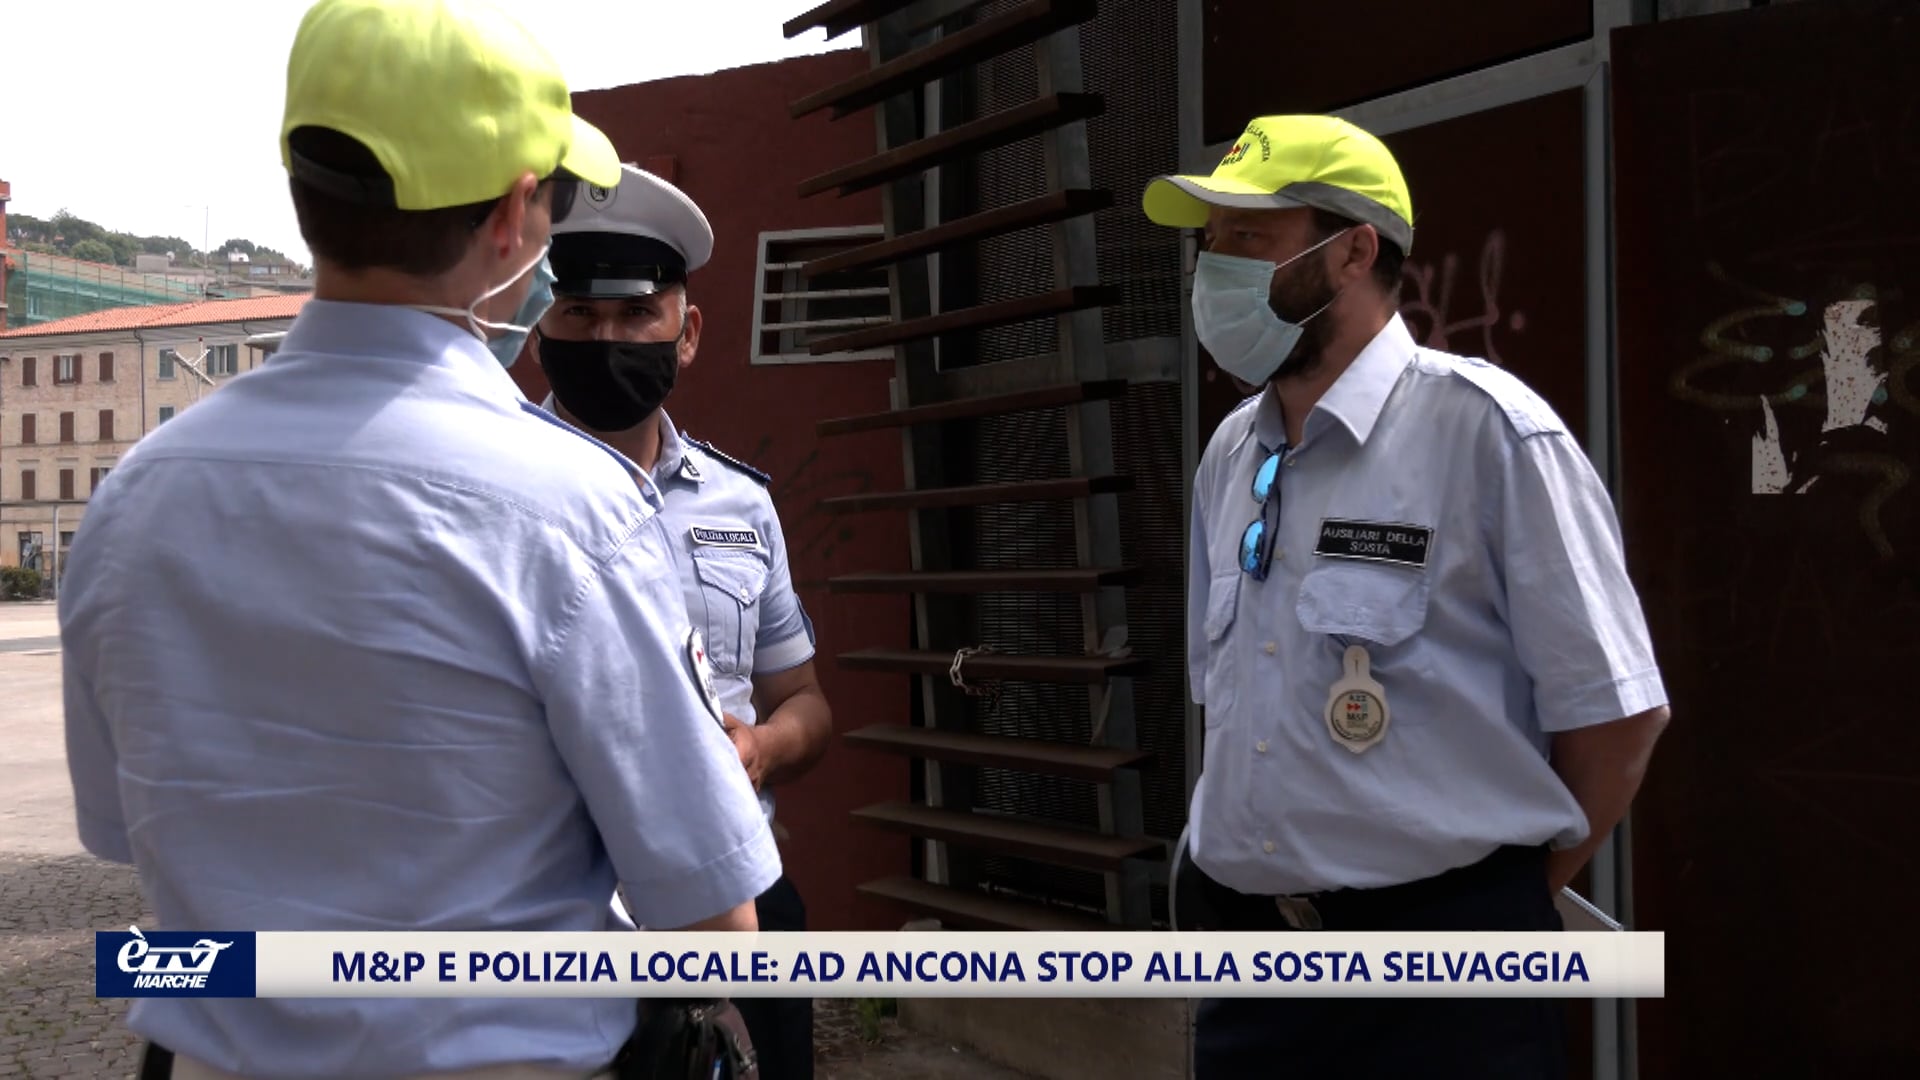 M&P e Polizia Locale Ancona: stop alla sosta selvaggia